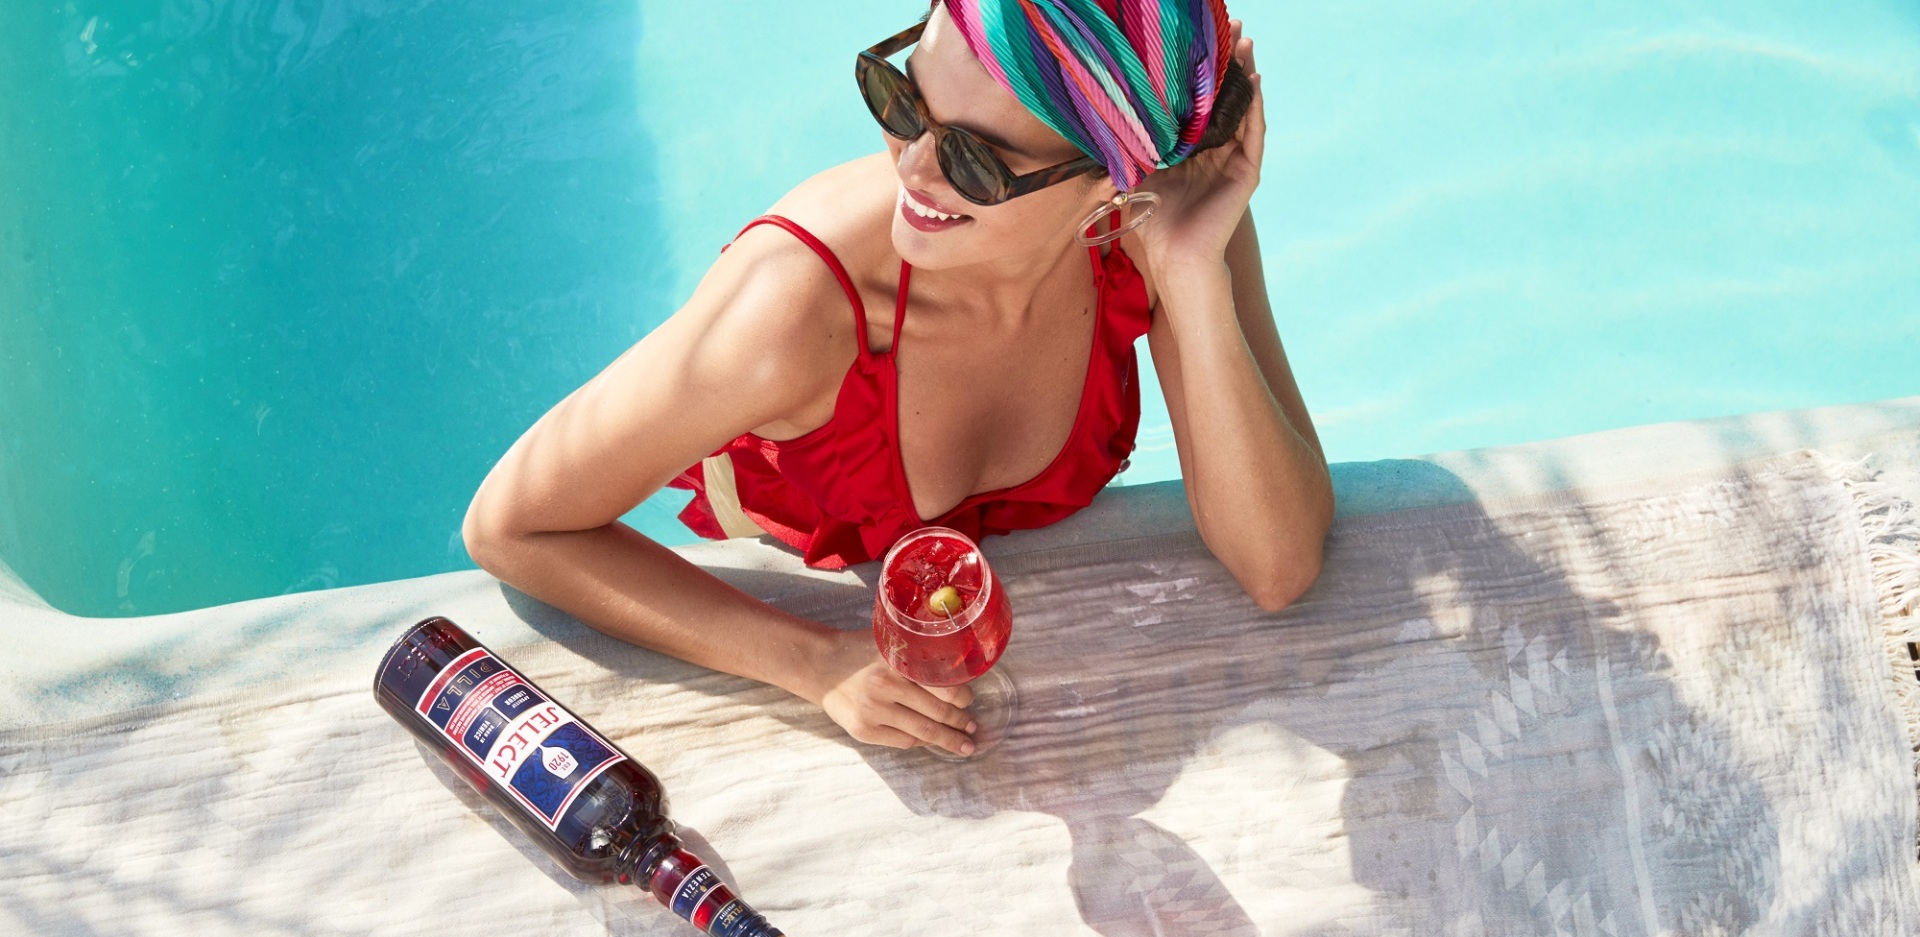 Γυναίκα σε πισίνα κρατάει ποτήρι με Spritz Veneziano και δίπλα είναι το μπουκάλι Select Aperitivo